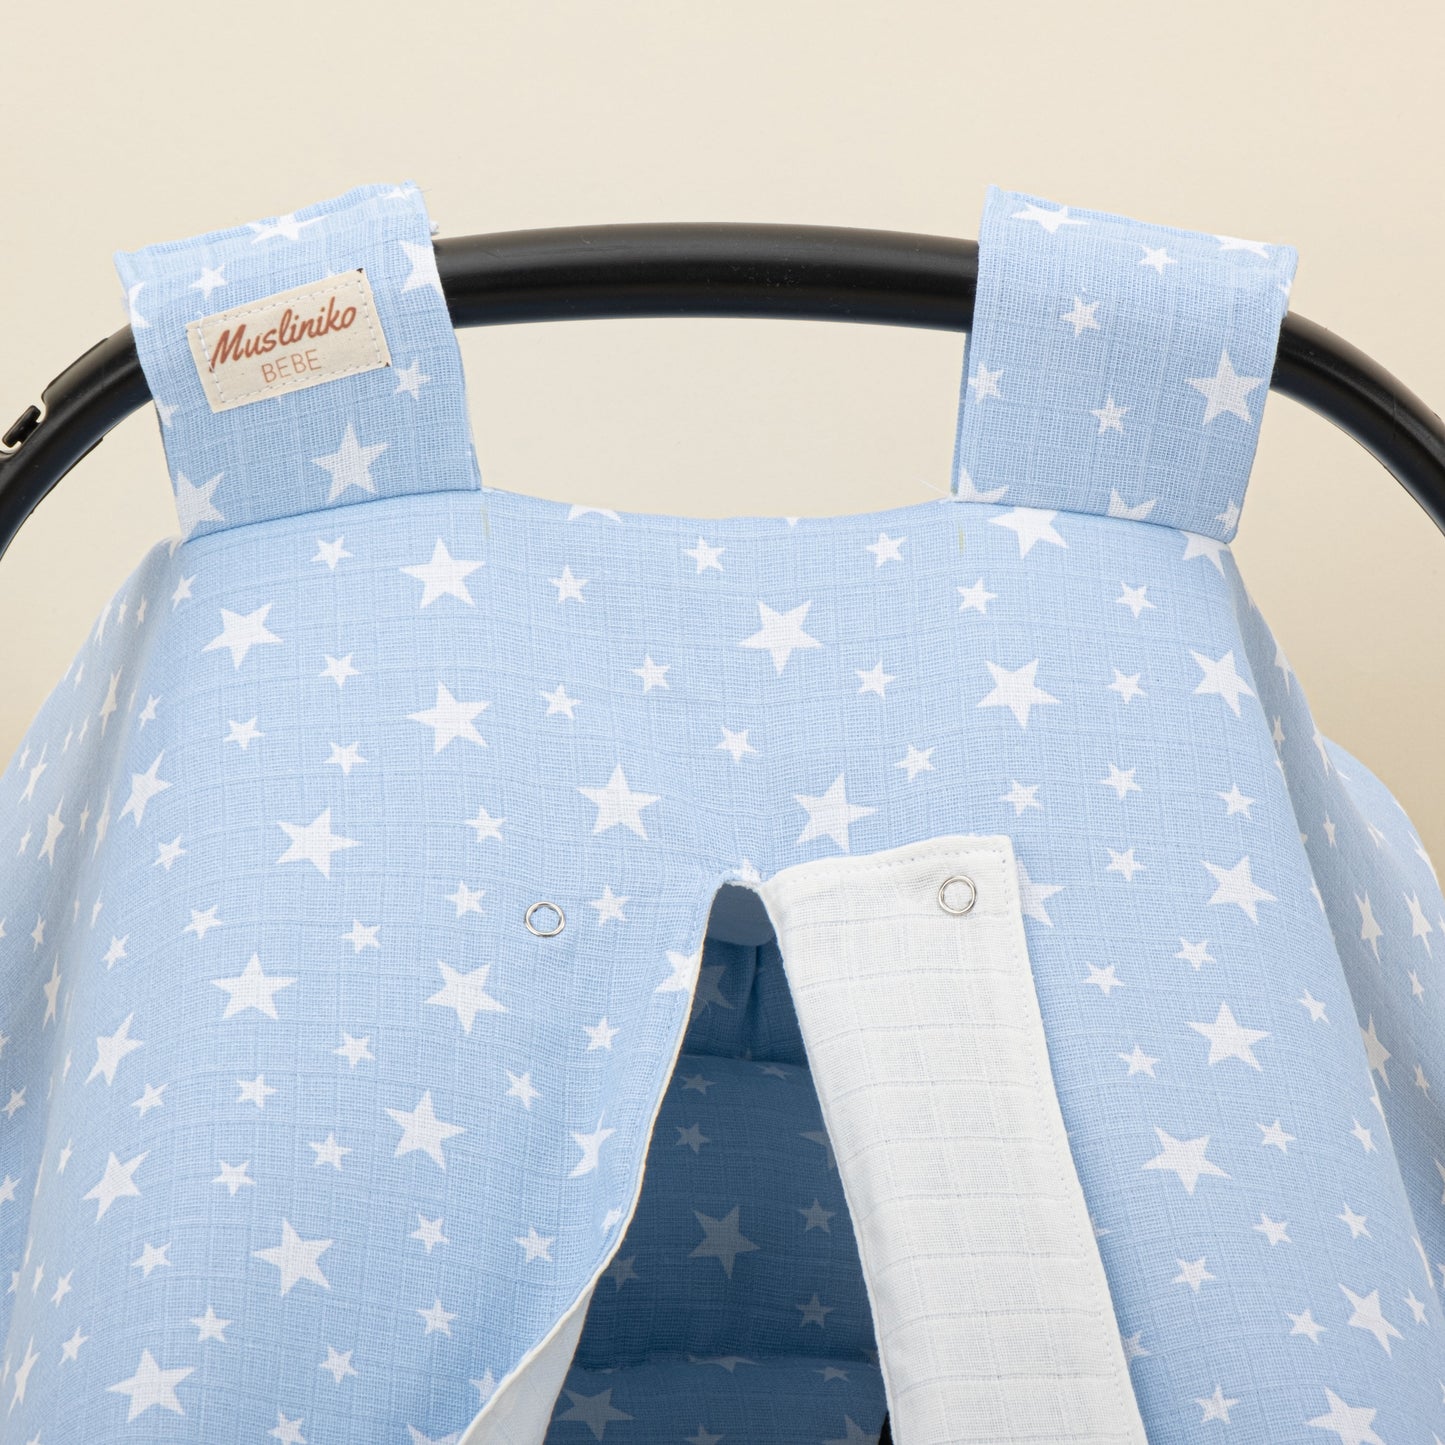 Stroller Cover Set - Double Side - White Muslin - Blue Little Stars